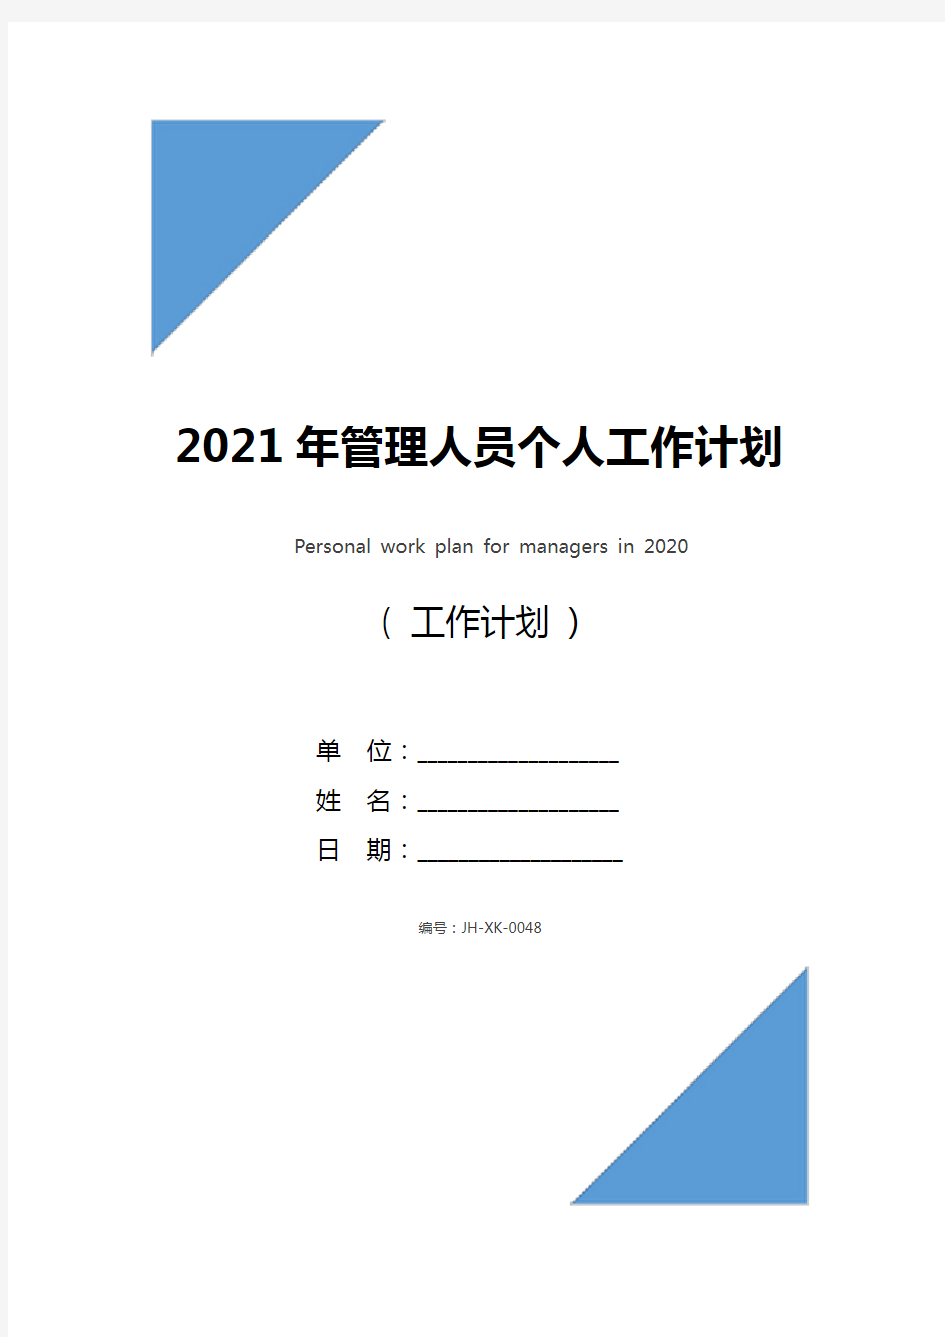 2021年管理人员个人工作计划(新版)